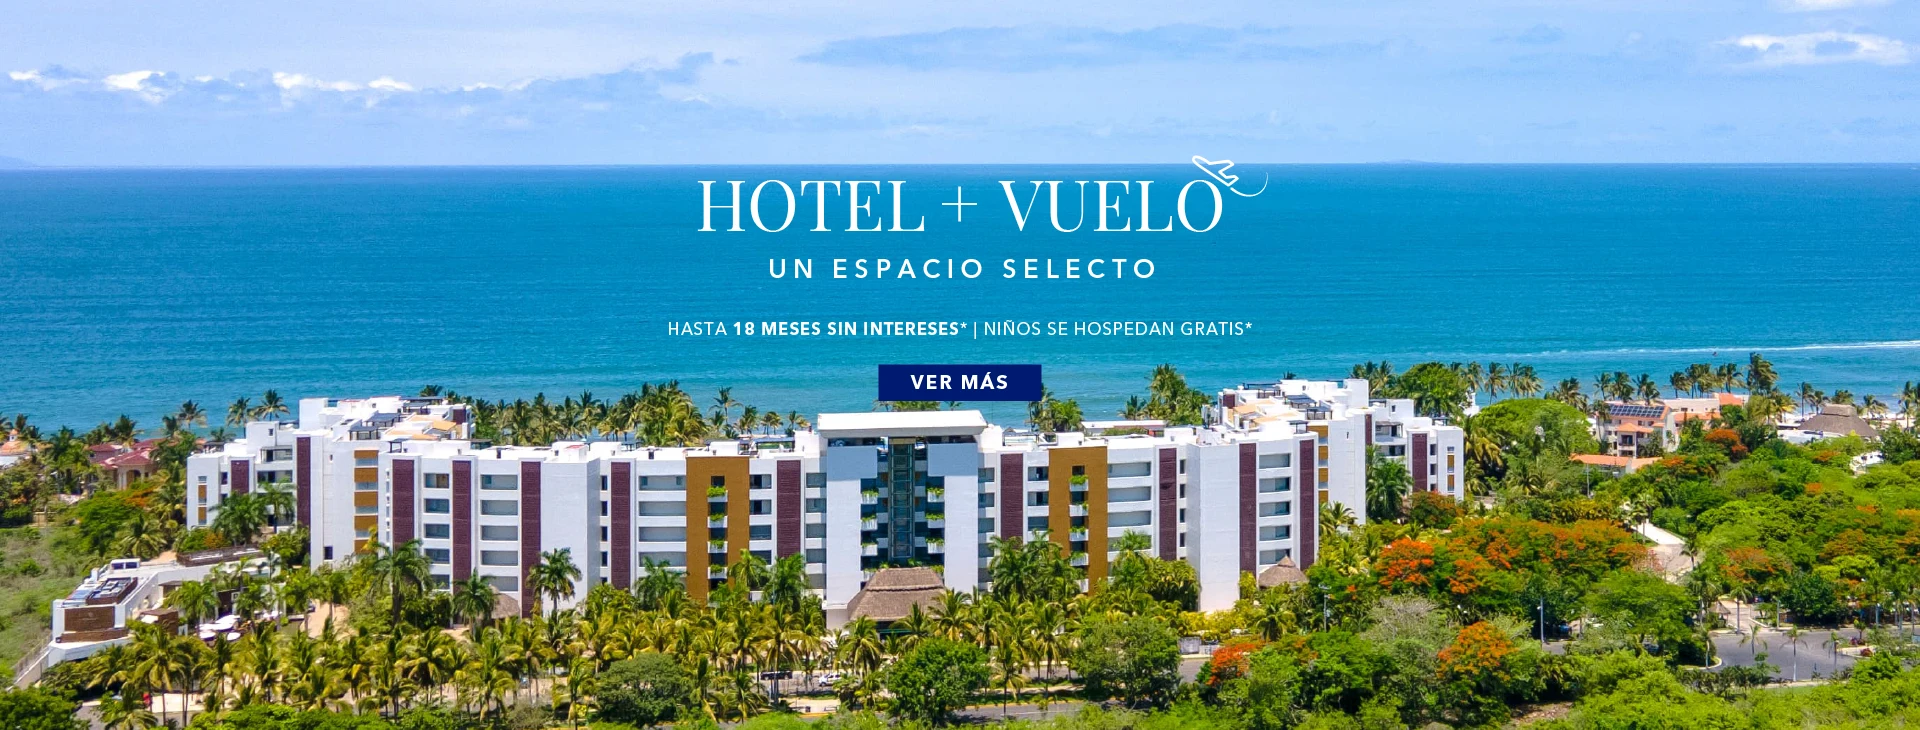 Venta de Hotel + Vuelo Marival Distinct Nuevo Vallarta